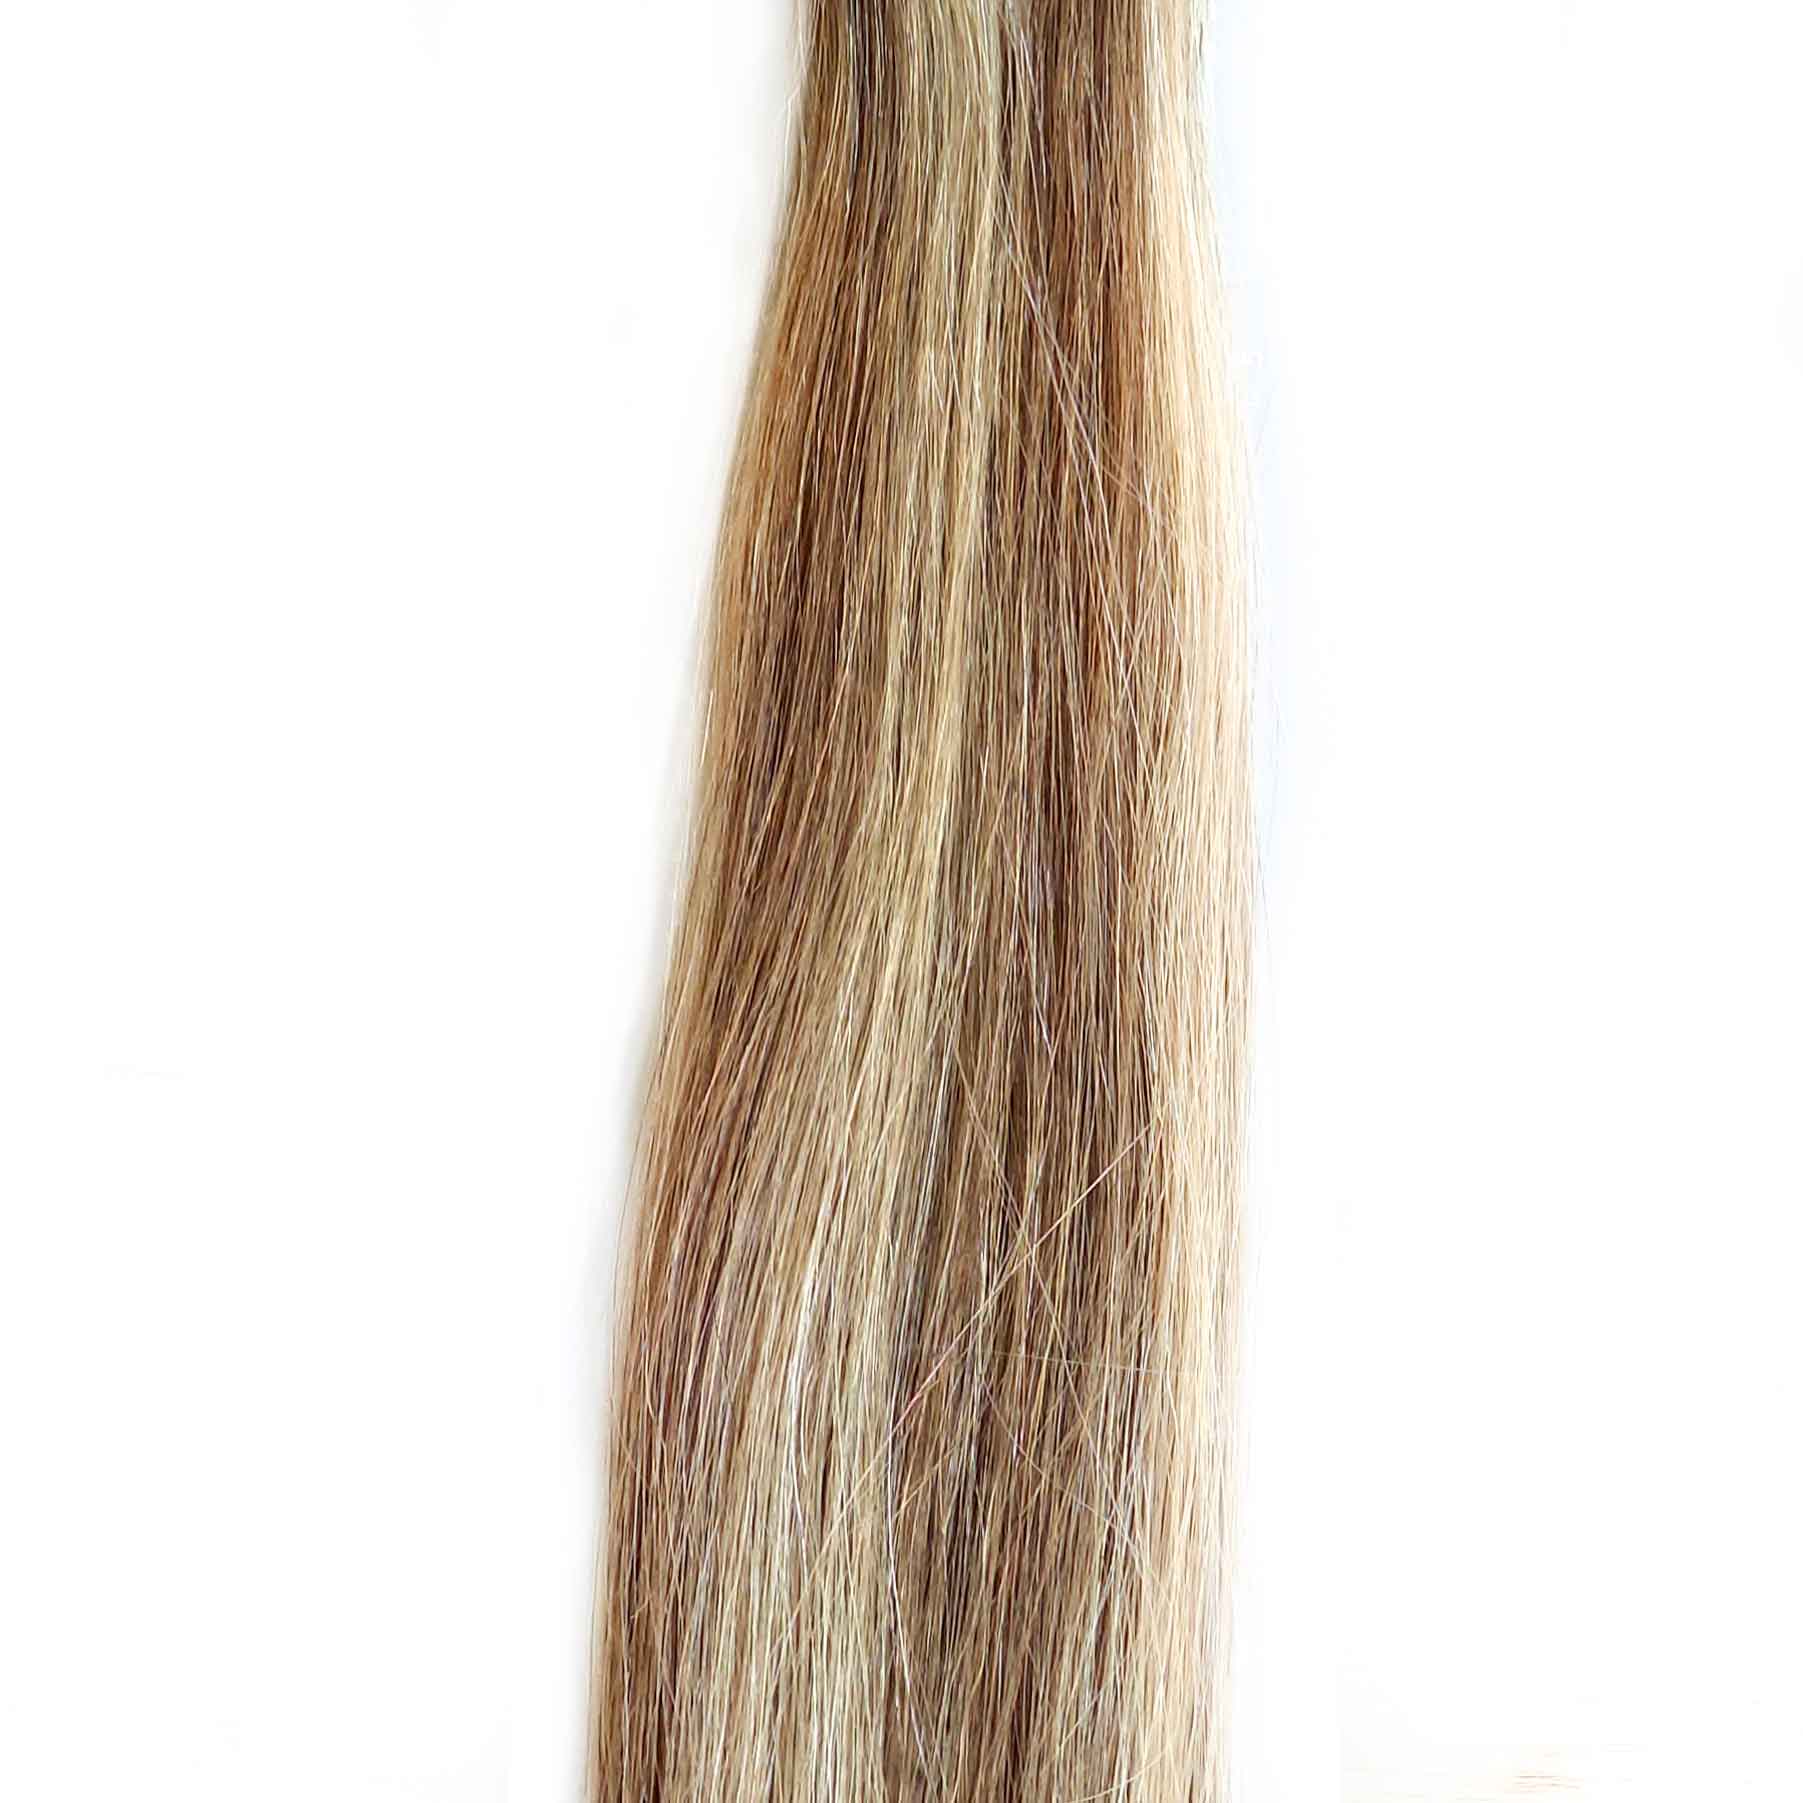 Color de DH Hair Extensions mechado en color 18 Rubio medio ceniza y 107 Rubio clarísimo ceniza leve